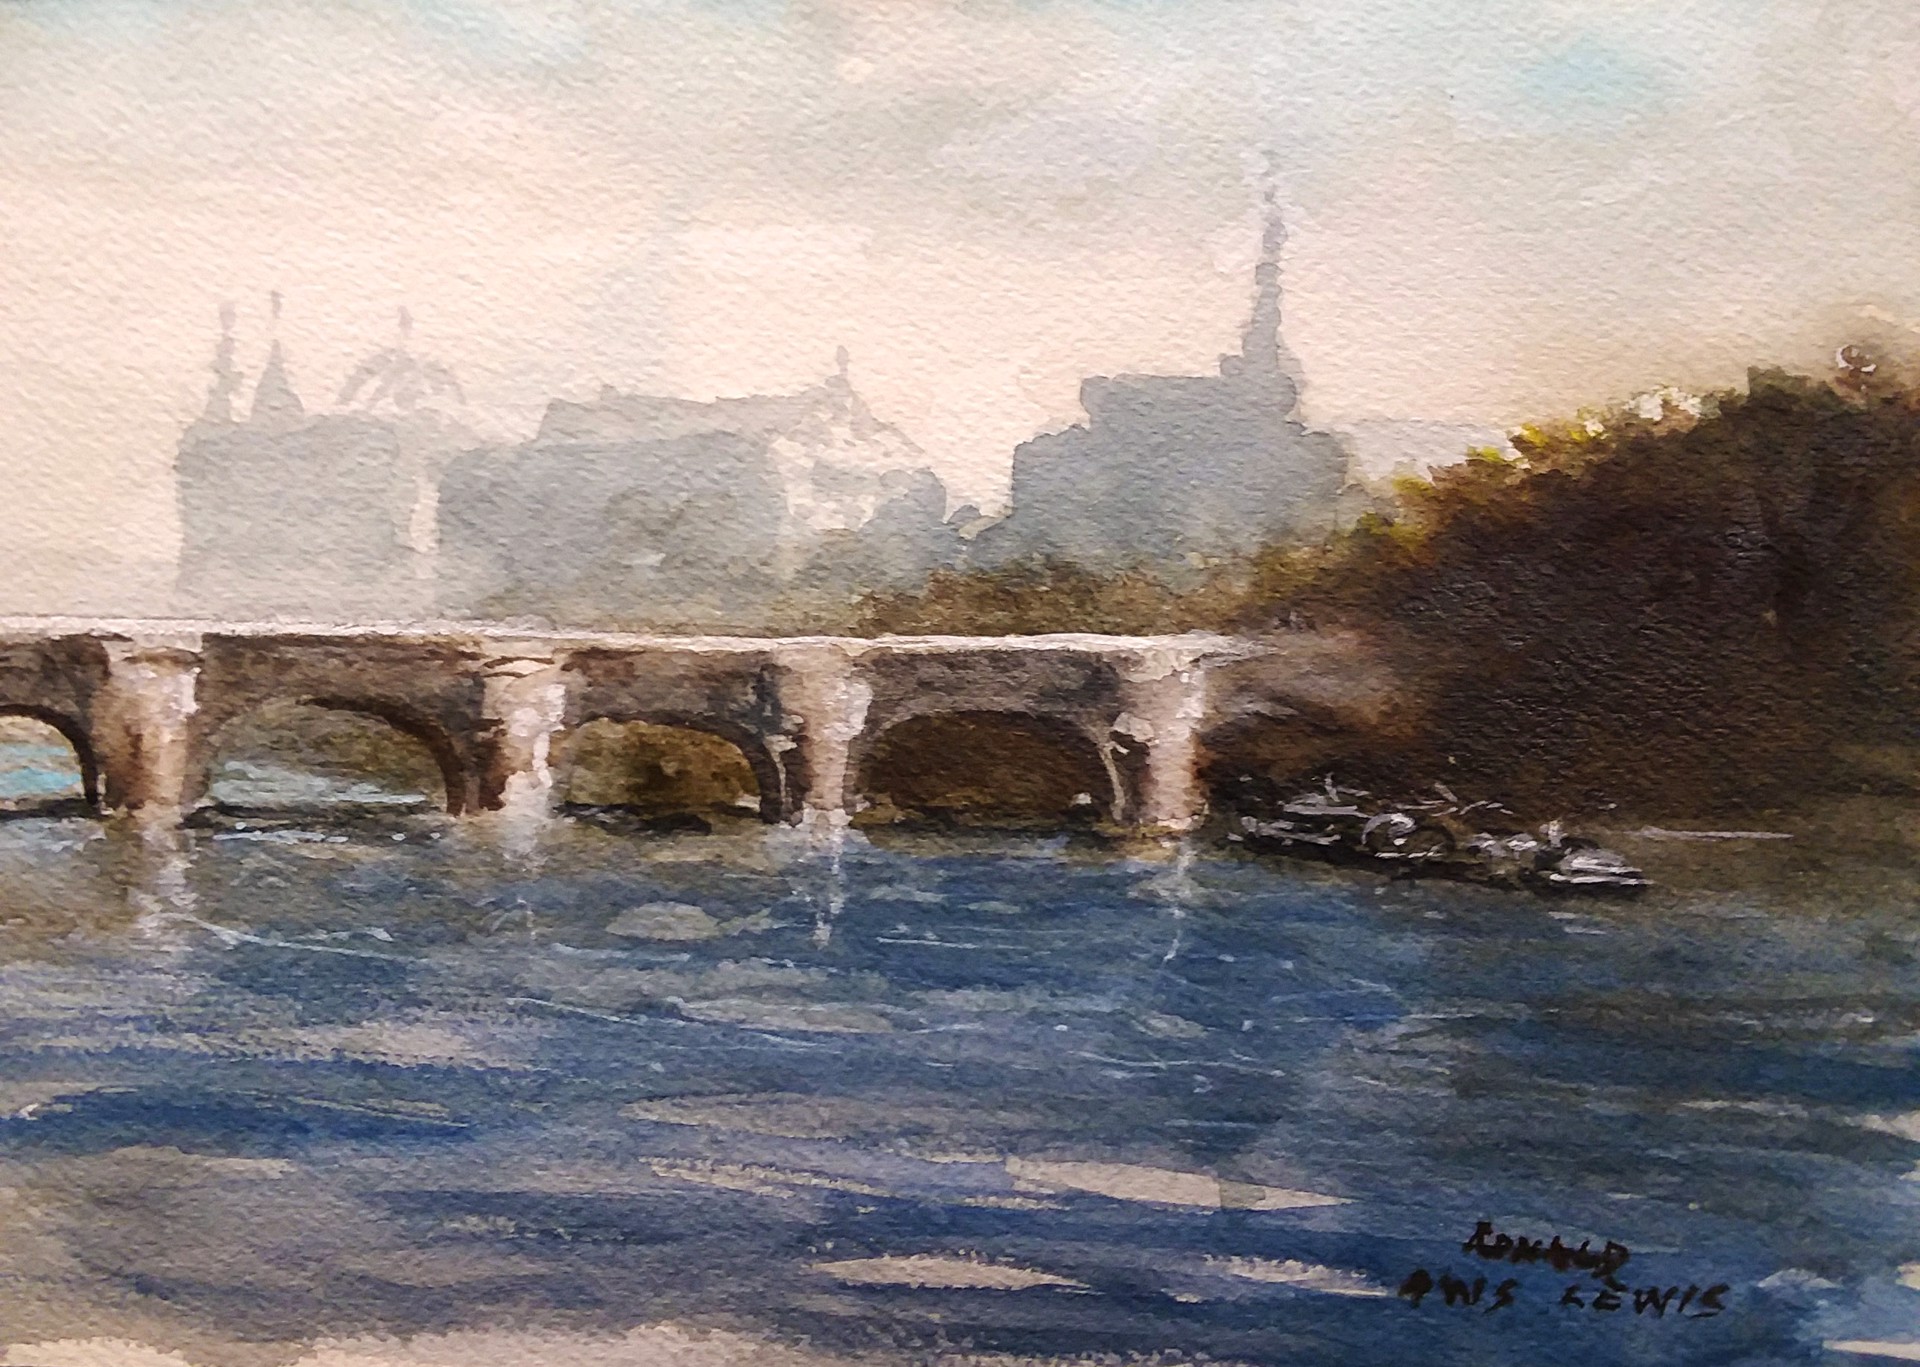 Paris Bridge by Ronald Lewis